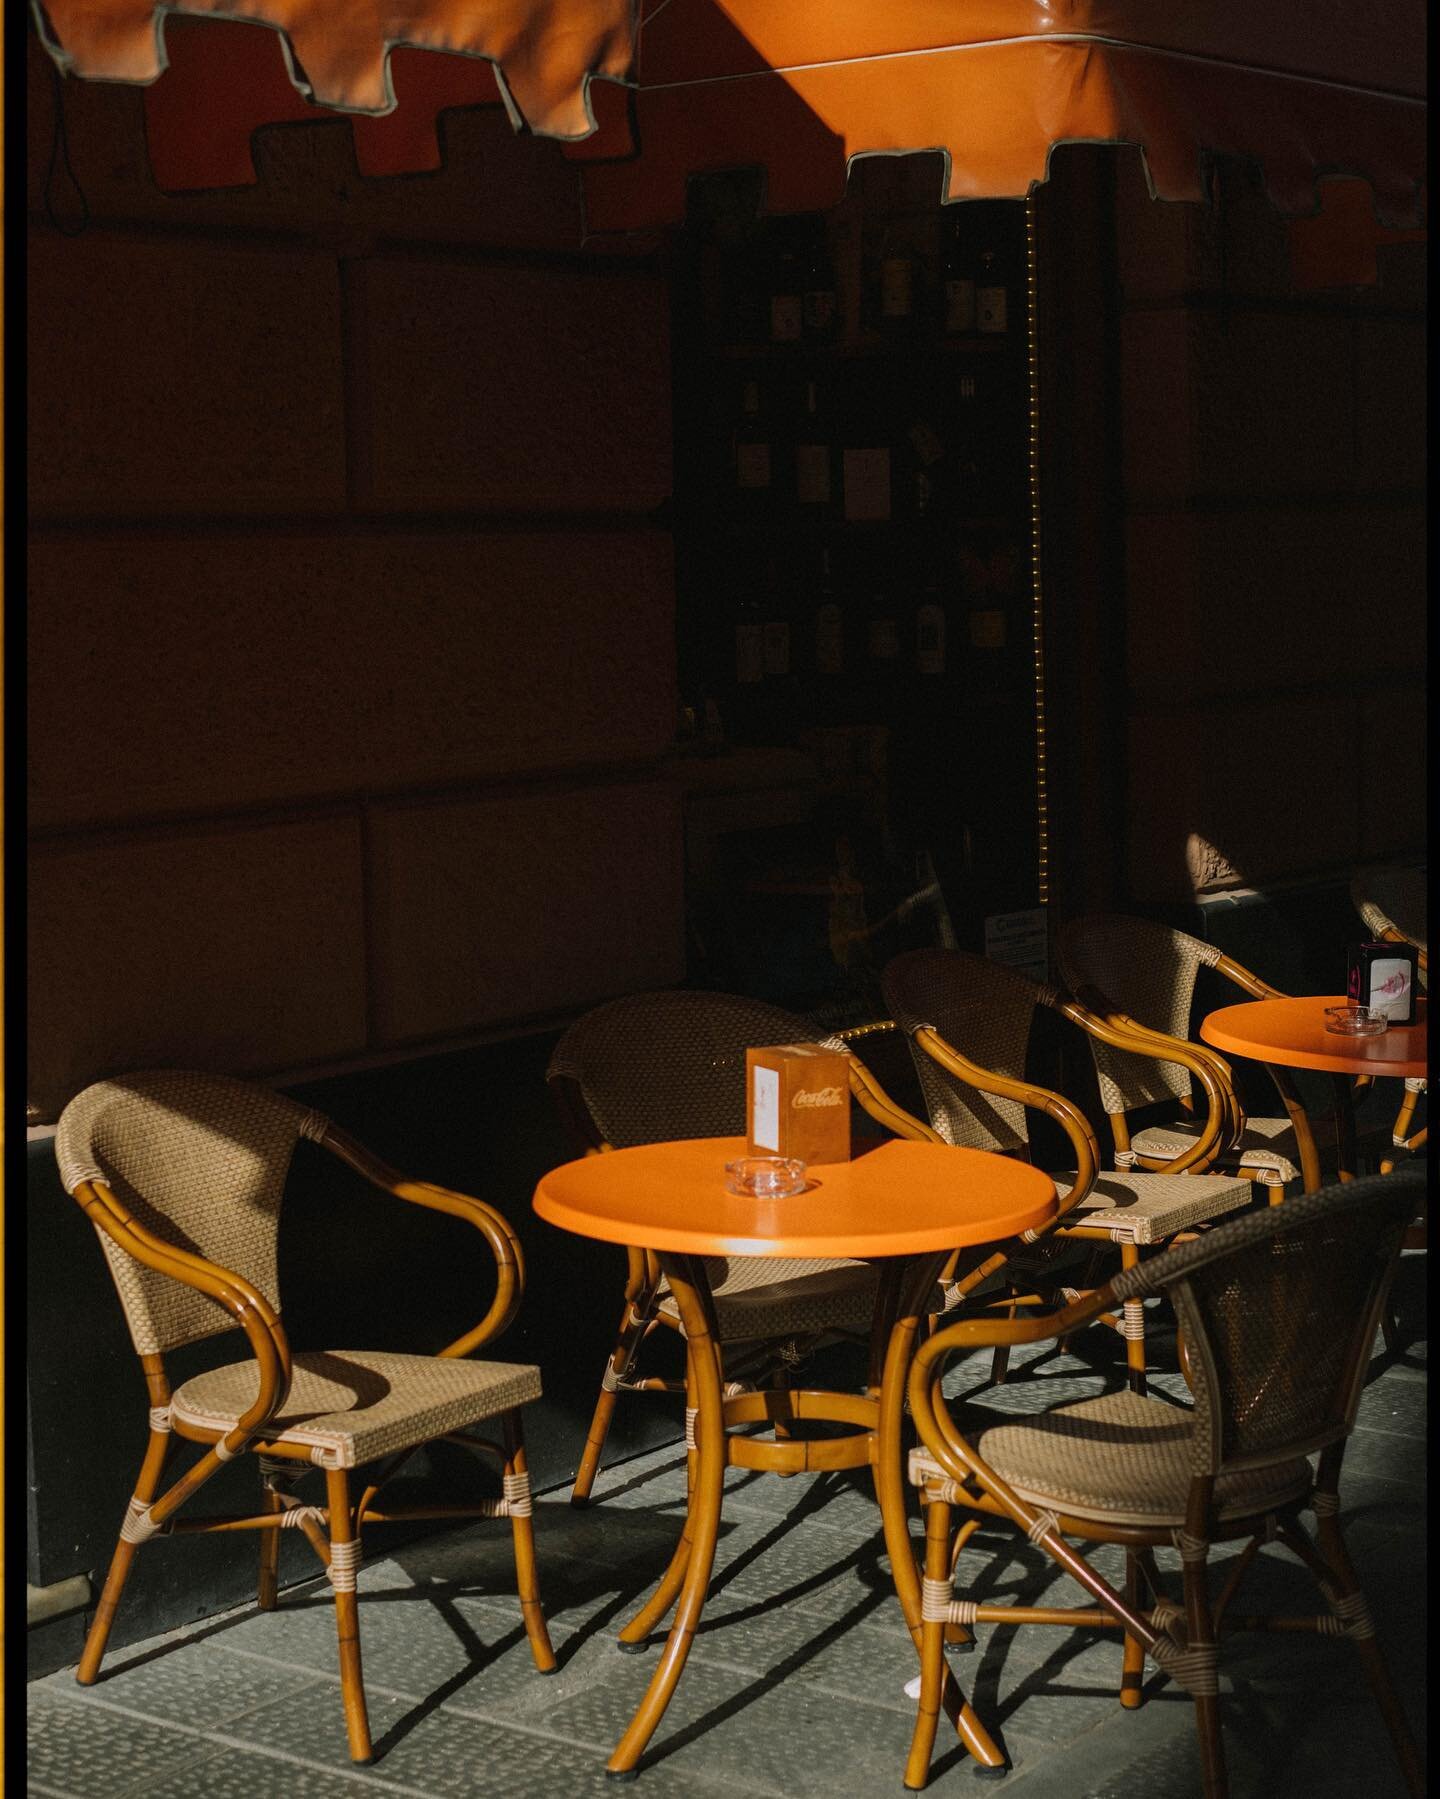 Parte del viaje me pas&eacute; fotografiando peque&ntilde;as cafeter&iacute;as 😂 
Pod&eacute;is ver el resto en mi &uacute;ltimo blog de la web ✨🚐

#niza #france #coffeeshop #streetphotography #fujixpro3